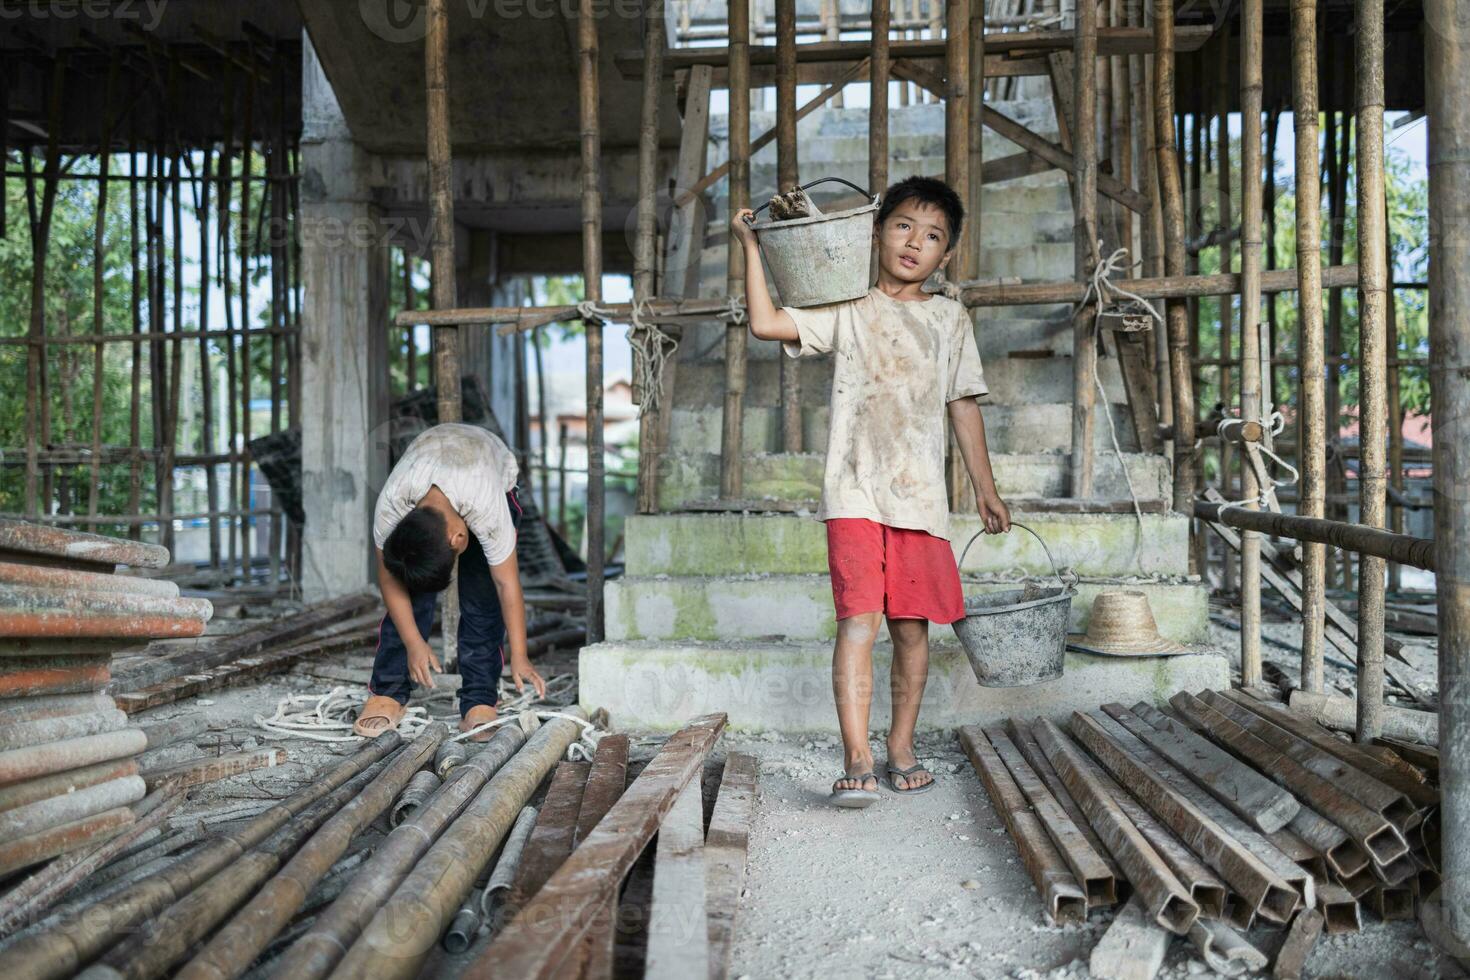 concepto de niño mano de obra, pobre niños siendo víctimas de construcción mano de obra, humano tráfico, niño abuso. foto